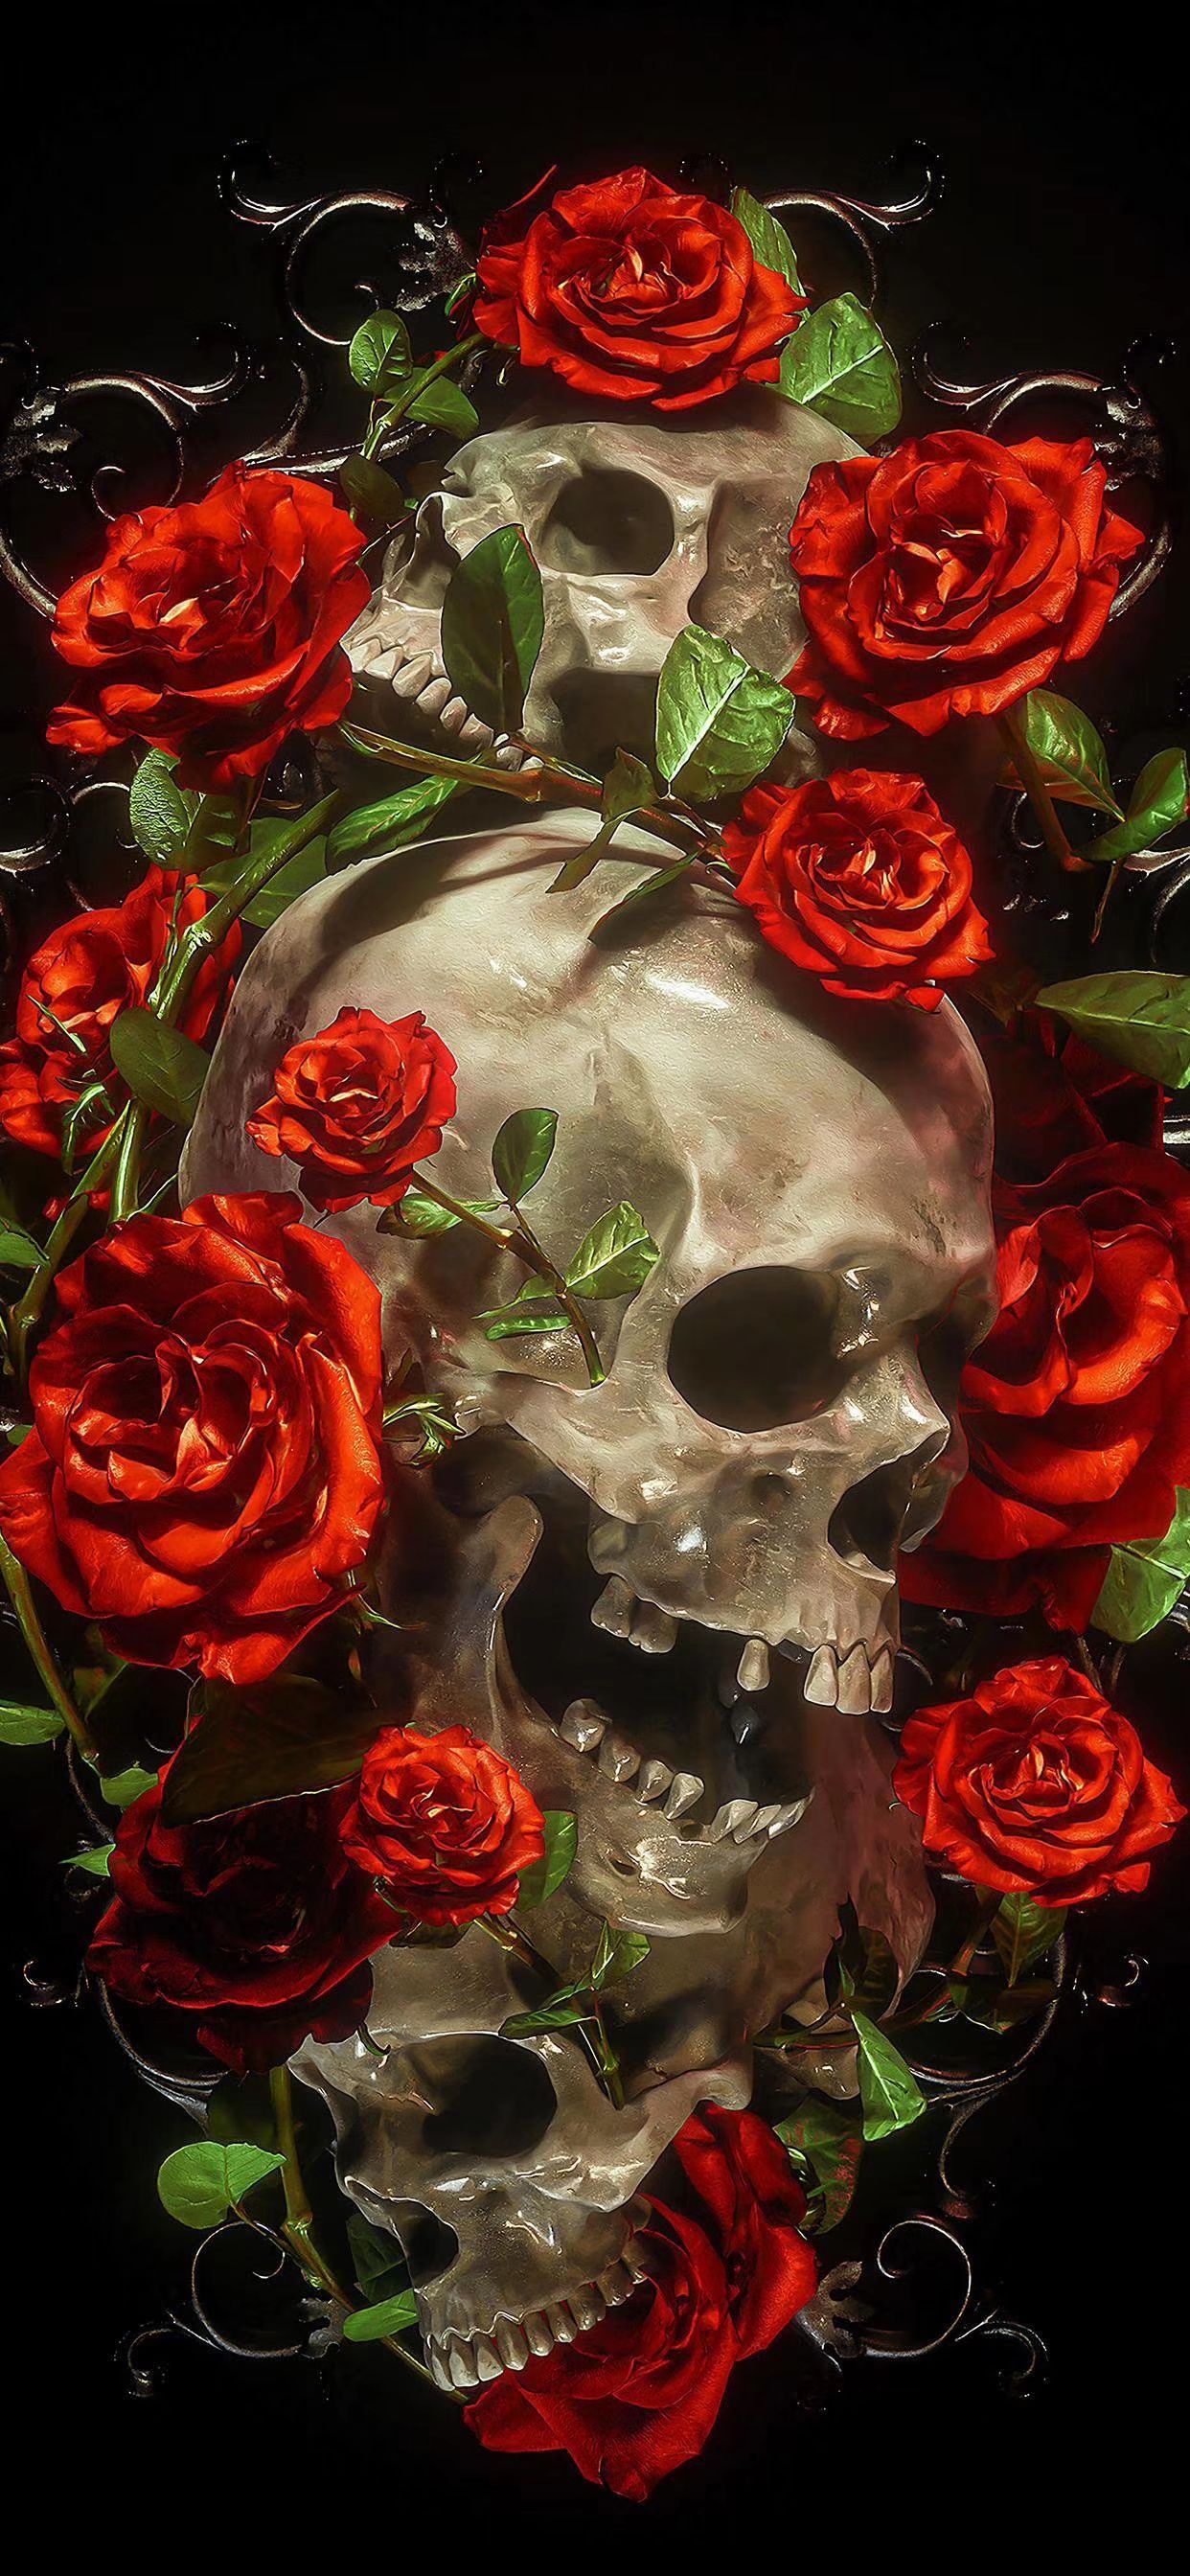 Rose skull wallpaper. Skull wallpaper, Goth wallpaper, Gothic wallpaper